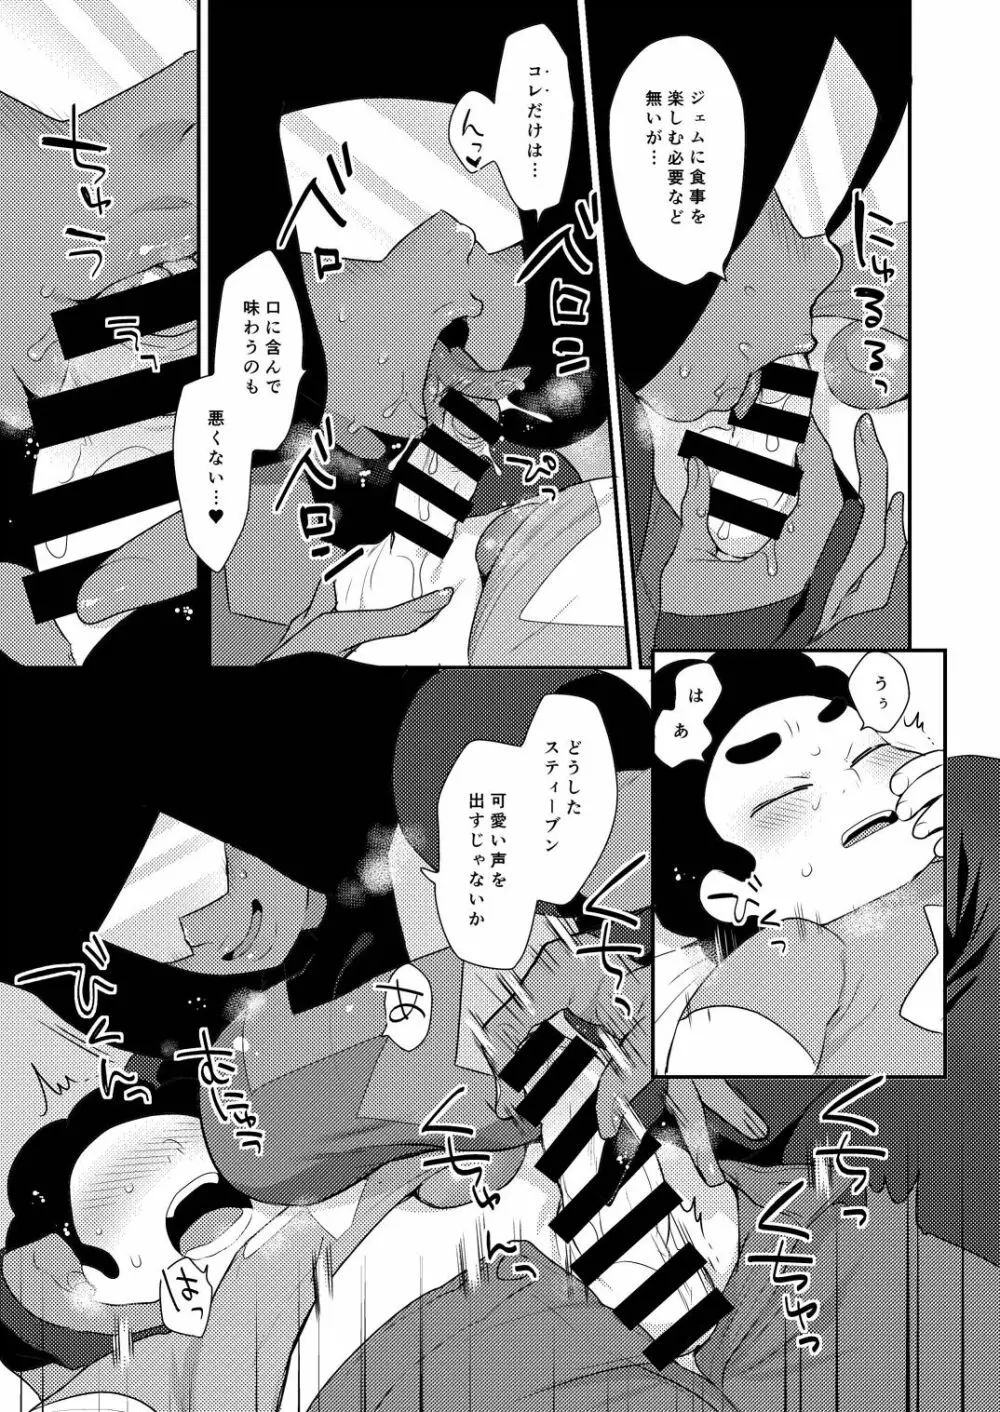 ガ姉ツ卜 -GARNET- - page5